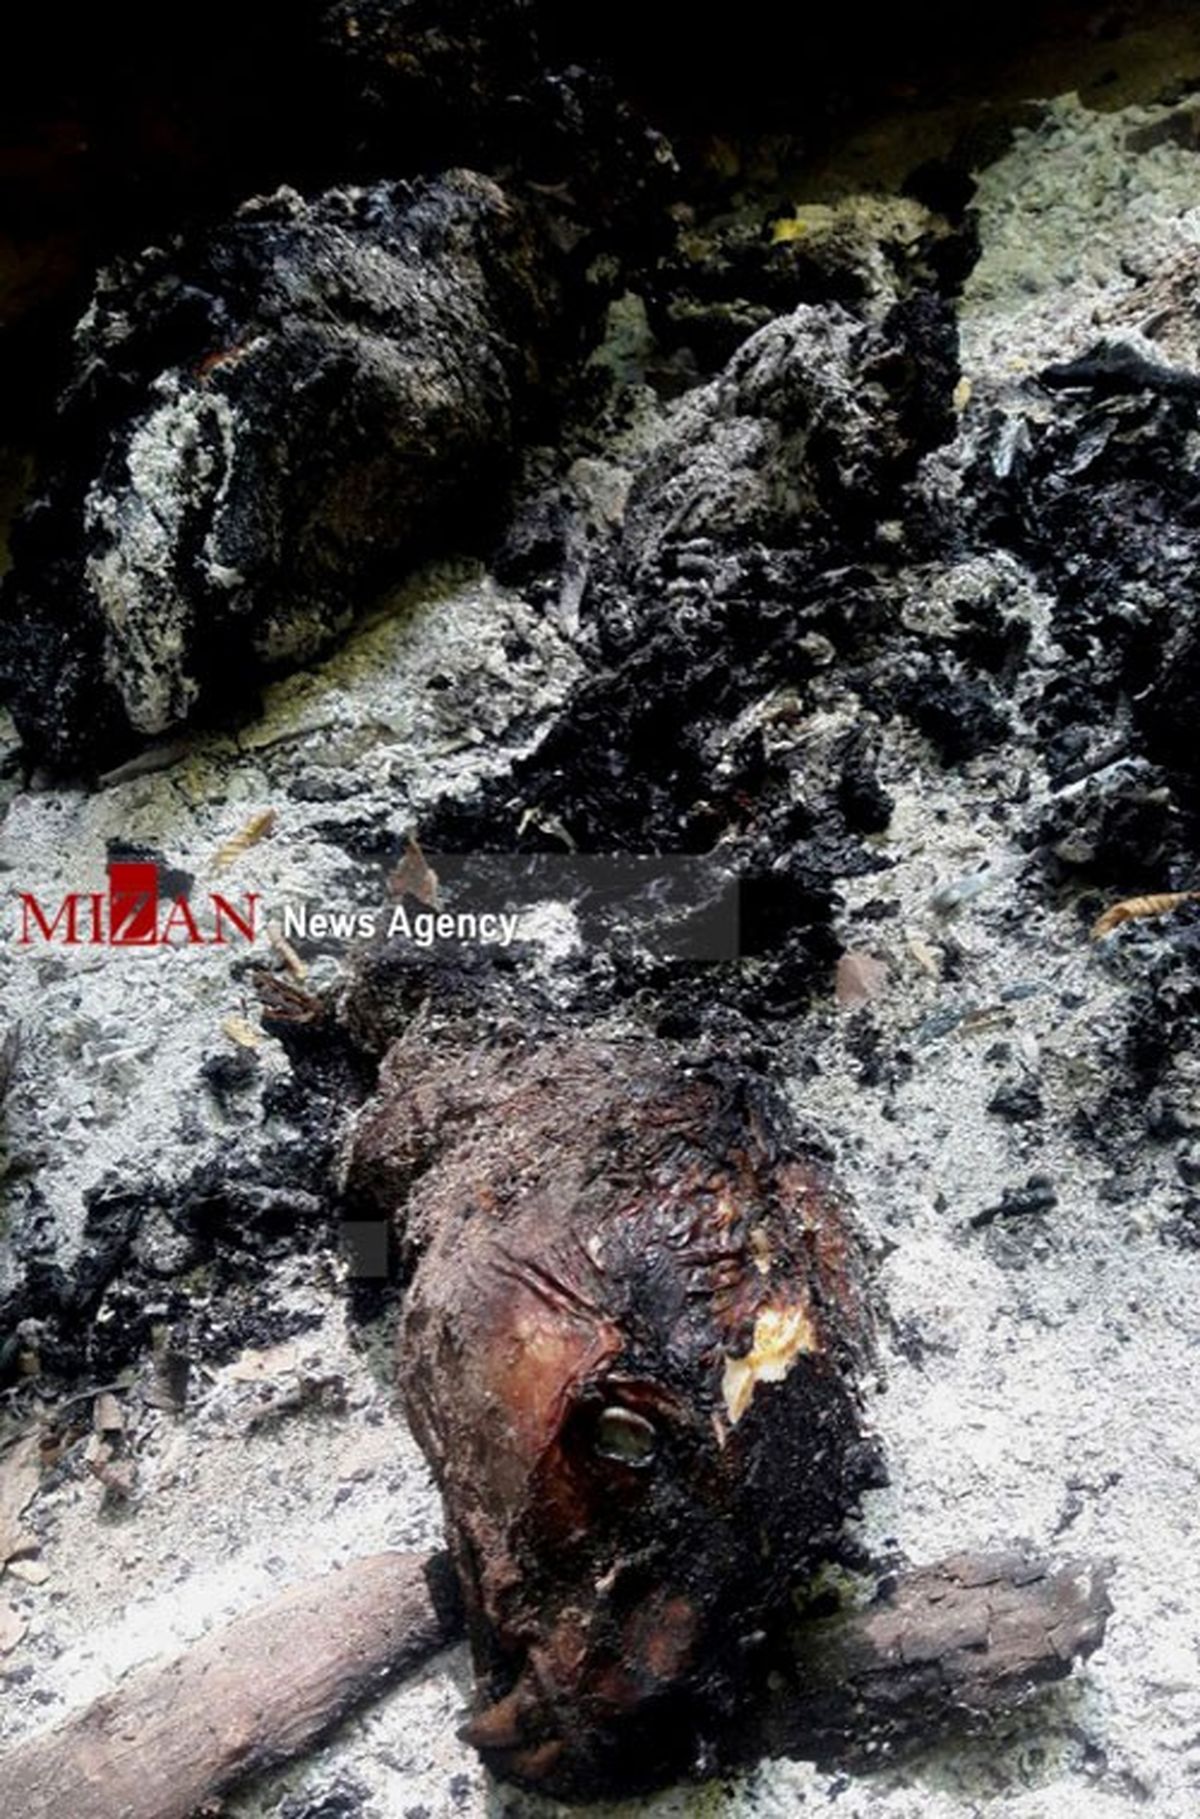 پیگیری حادثه سوزاندن یک پلنگ ماده در مازندران